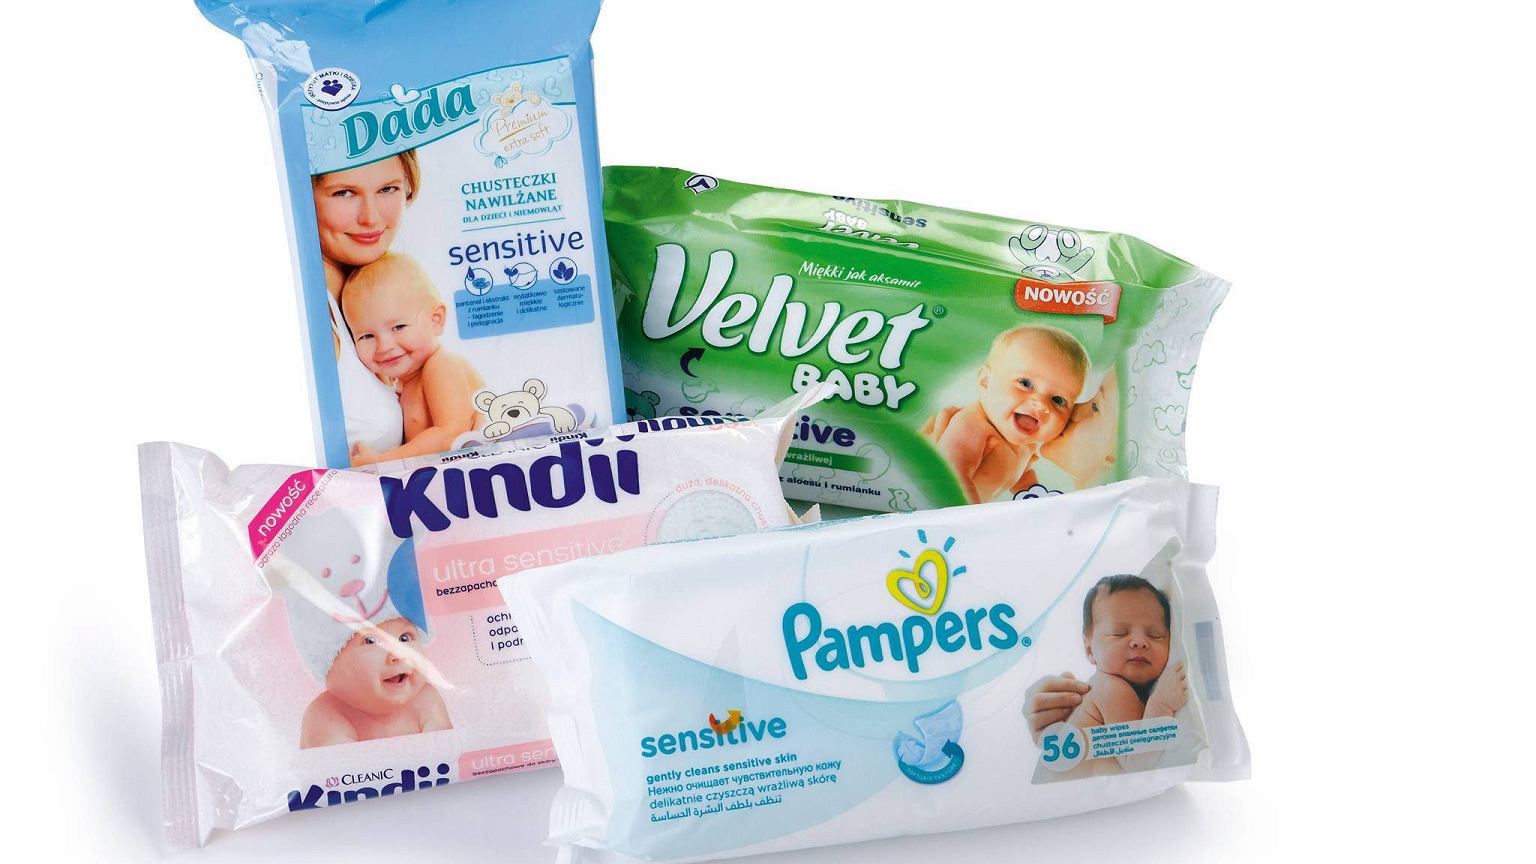 velvet_baby pure chusteczki nawilżane dla dzieci i niemowląt 64szt